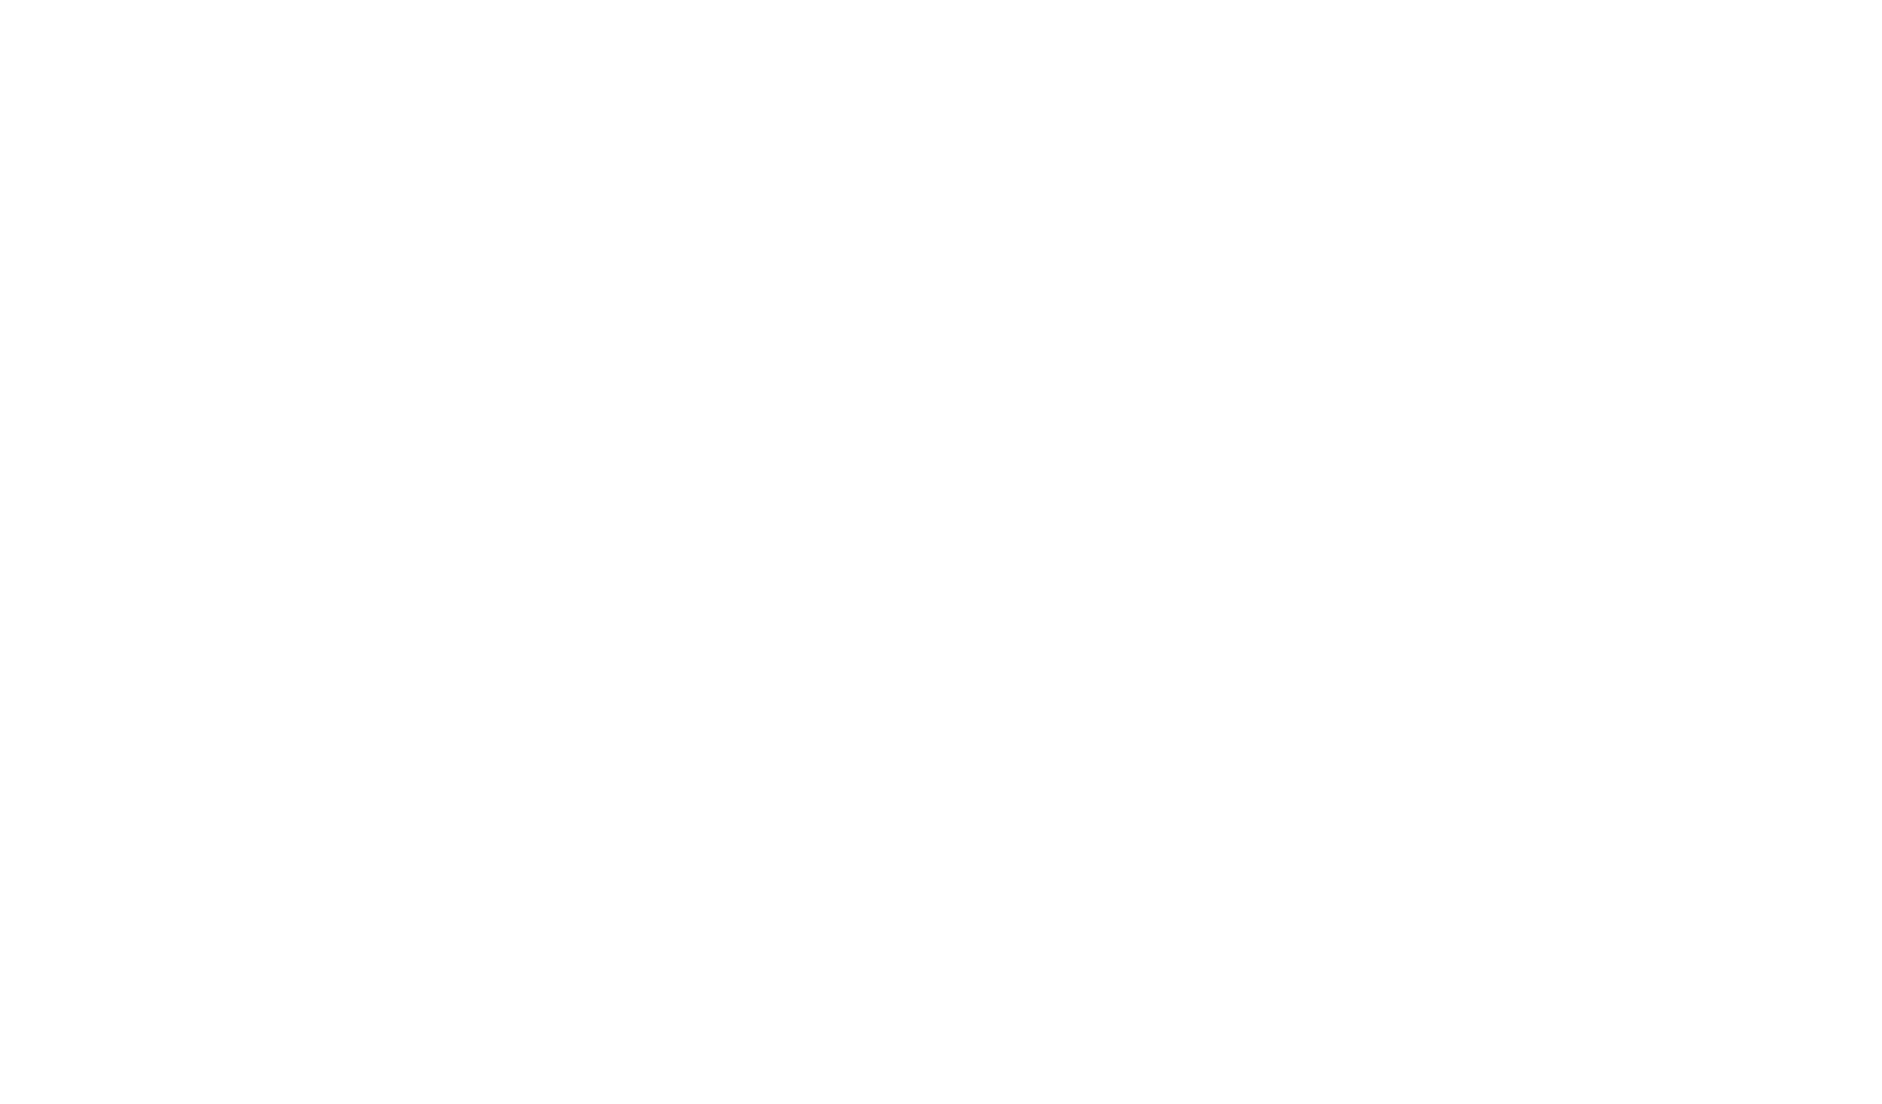 Rosso Forni